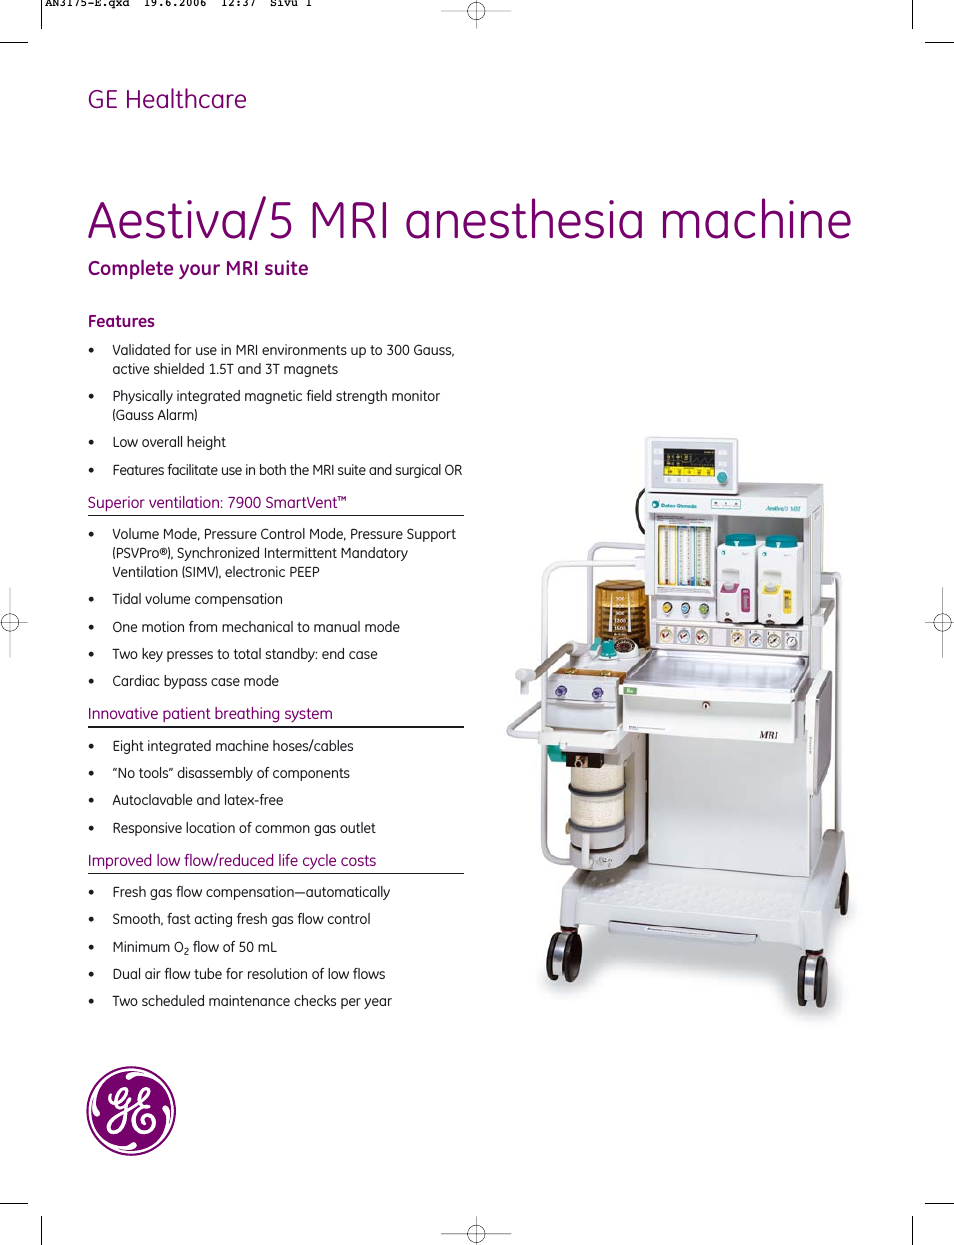 Aestiva_5 MRI anesthesia machine